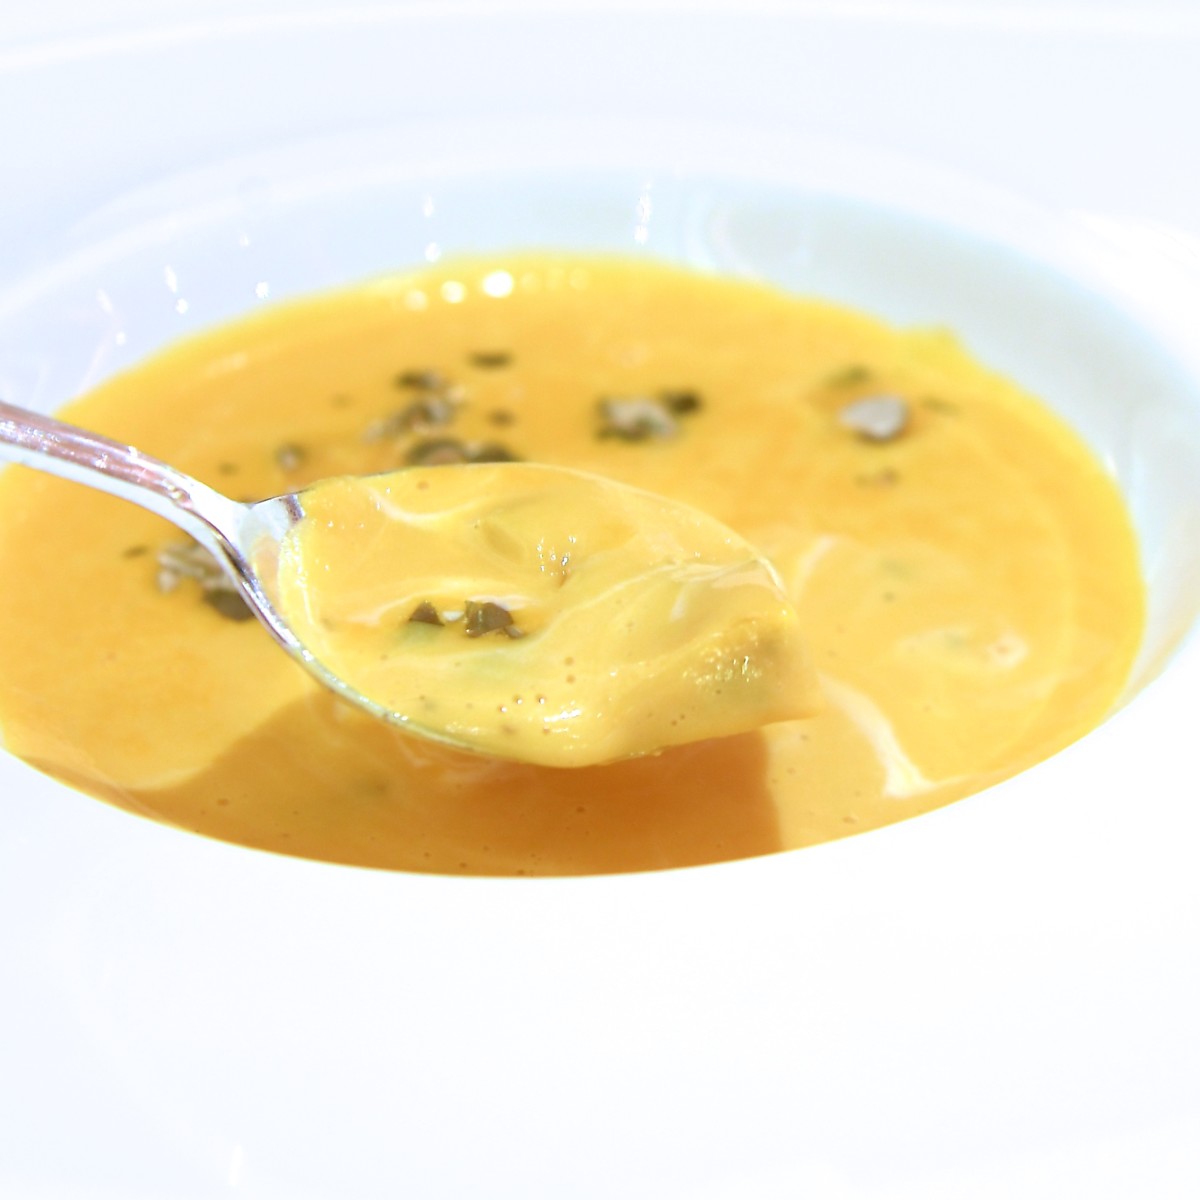 カボチャのスープ セージ風味のニョッキを浮かべて　画像アップ